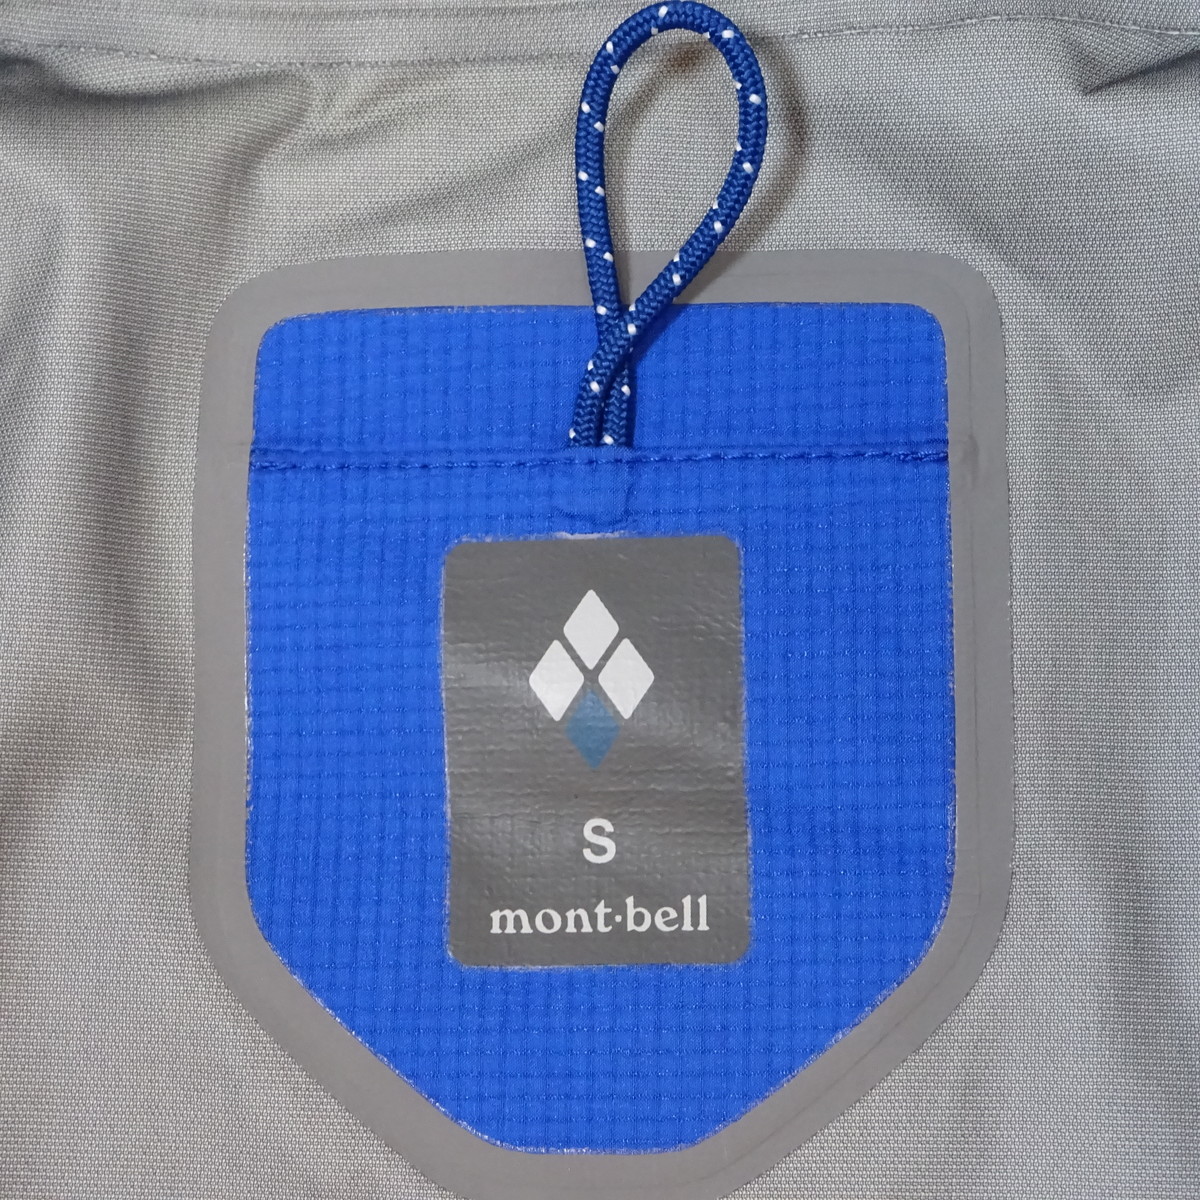 mont-bell GORE-TEX モンベル ゴアテックス ストームクルーザージャケット 防水性 透湿性 軽量性 レインウエア Sサイズ 1128531_画像4